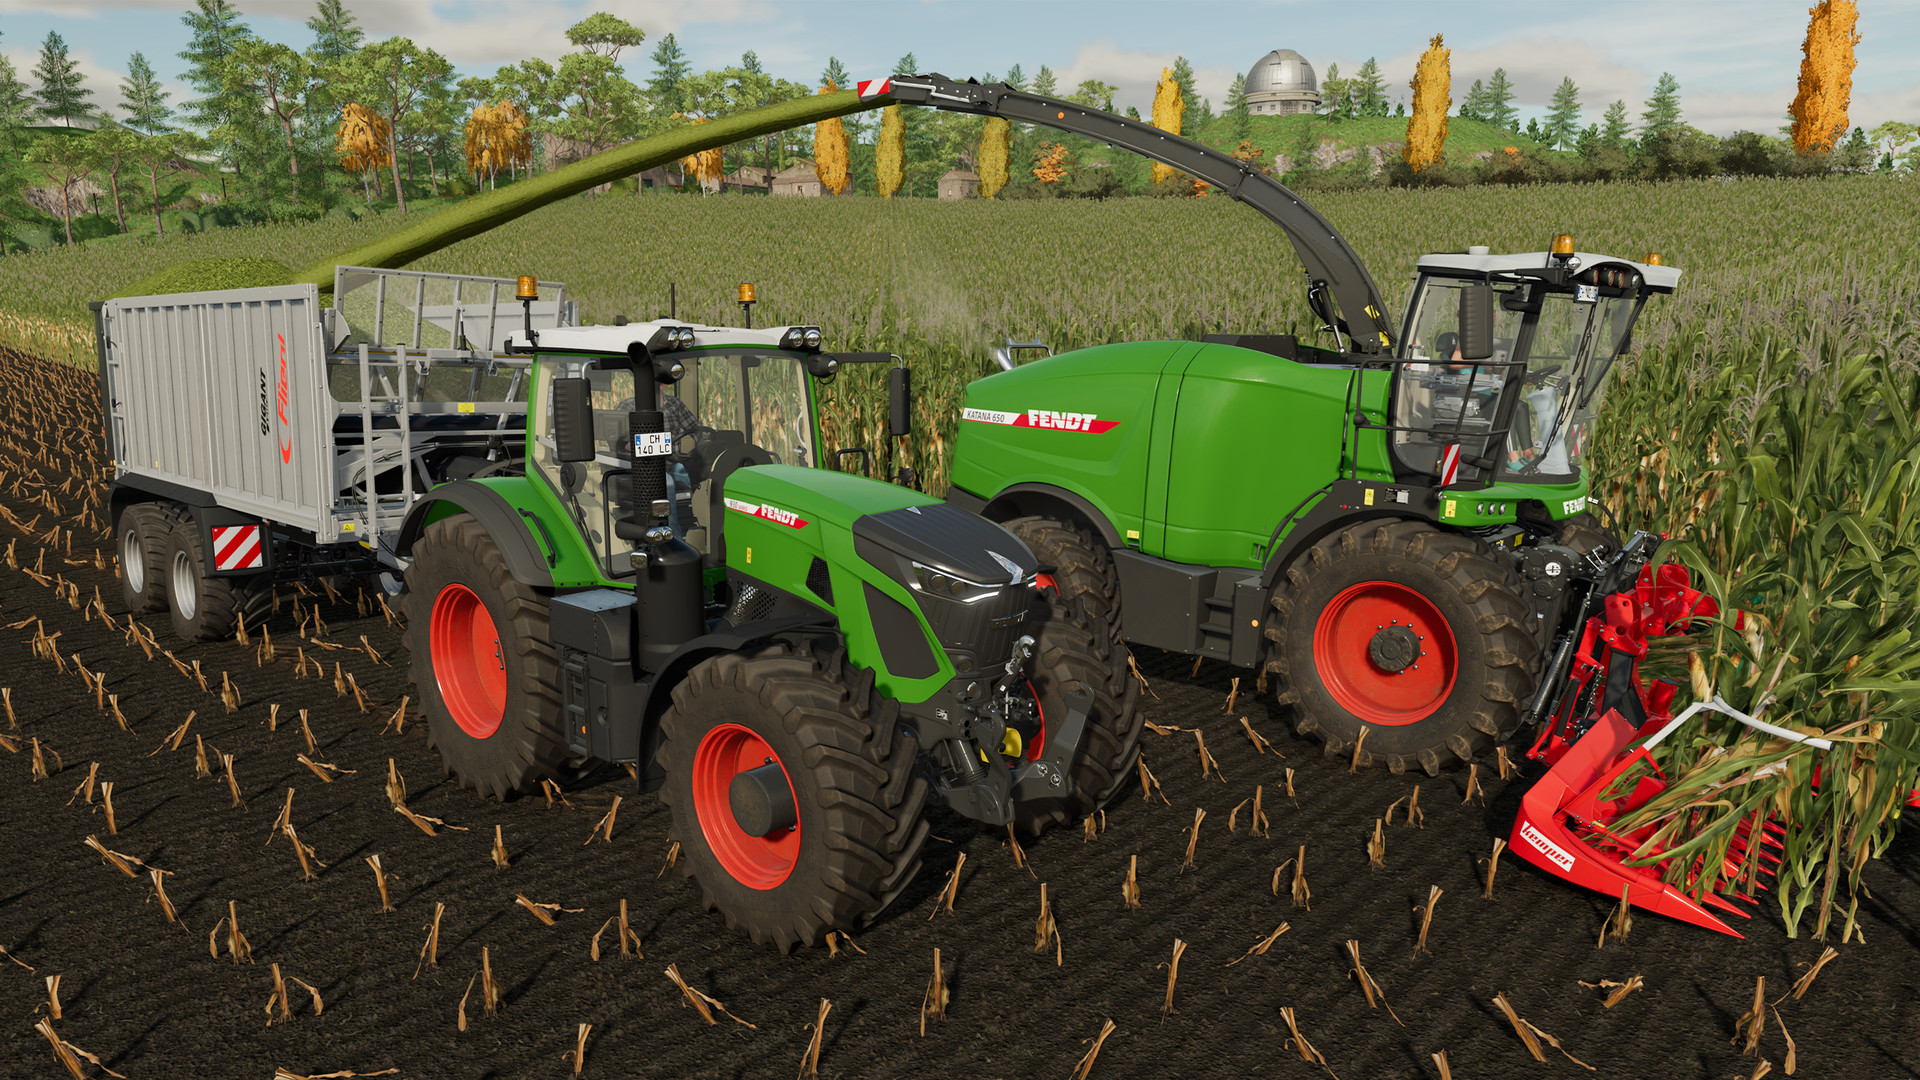 New BEST Farming Simulator Joystick & Wheel Setup? #farmingsimulator 